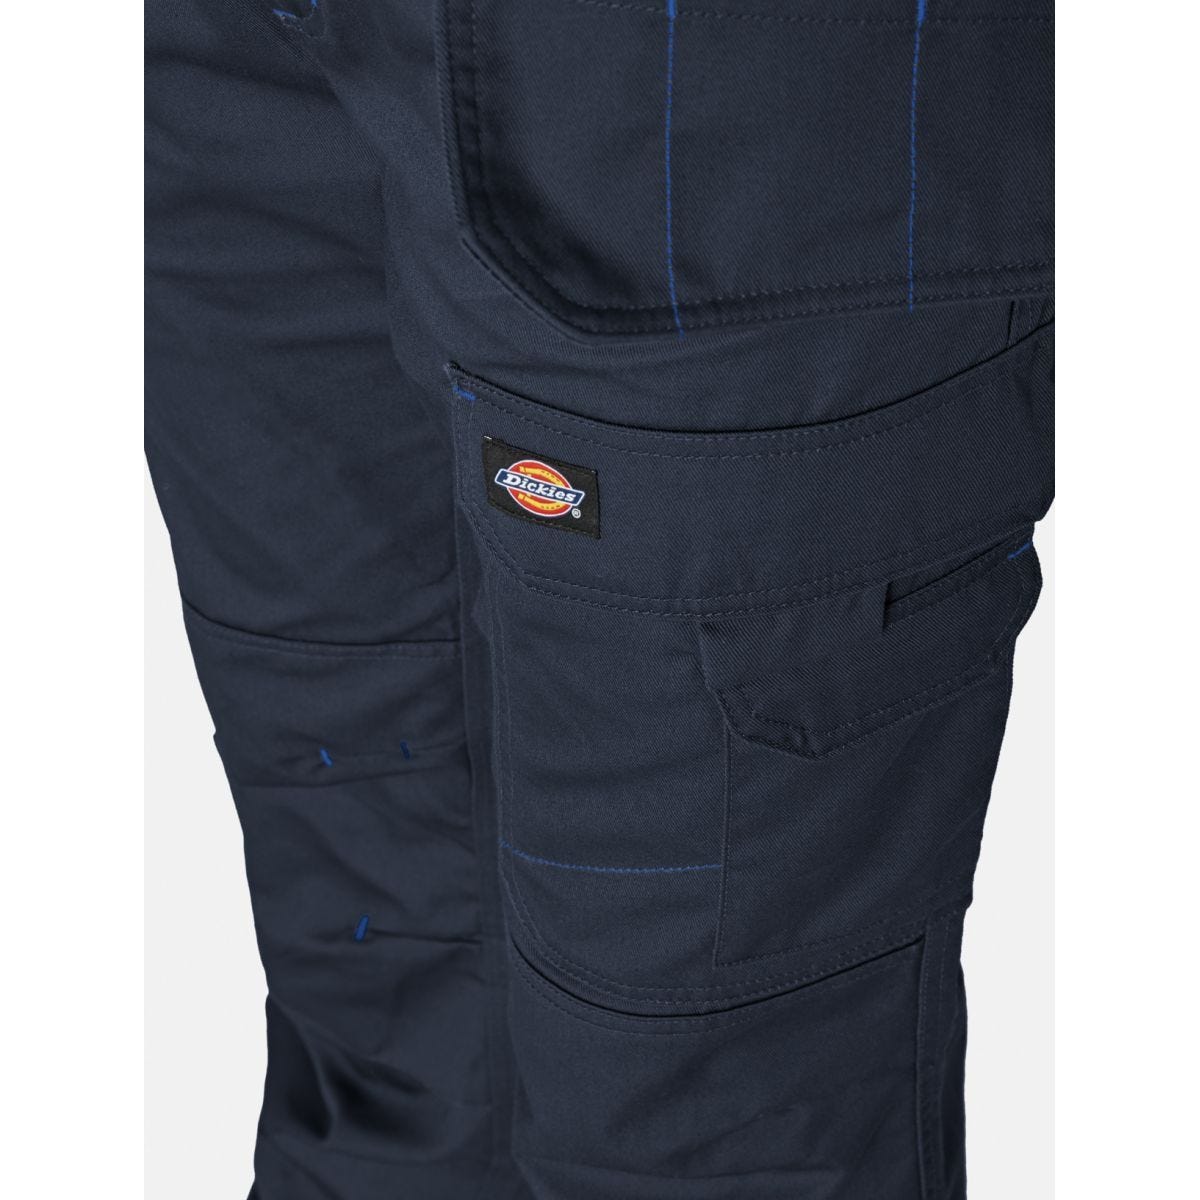 Pantalon Redhawk Pro Bleu marine - Dickies - Taille 48 4